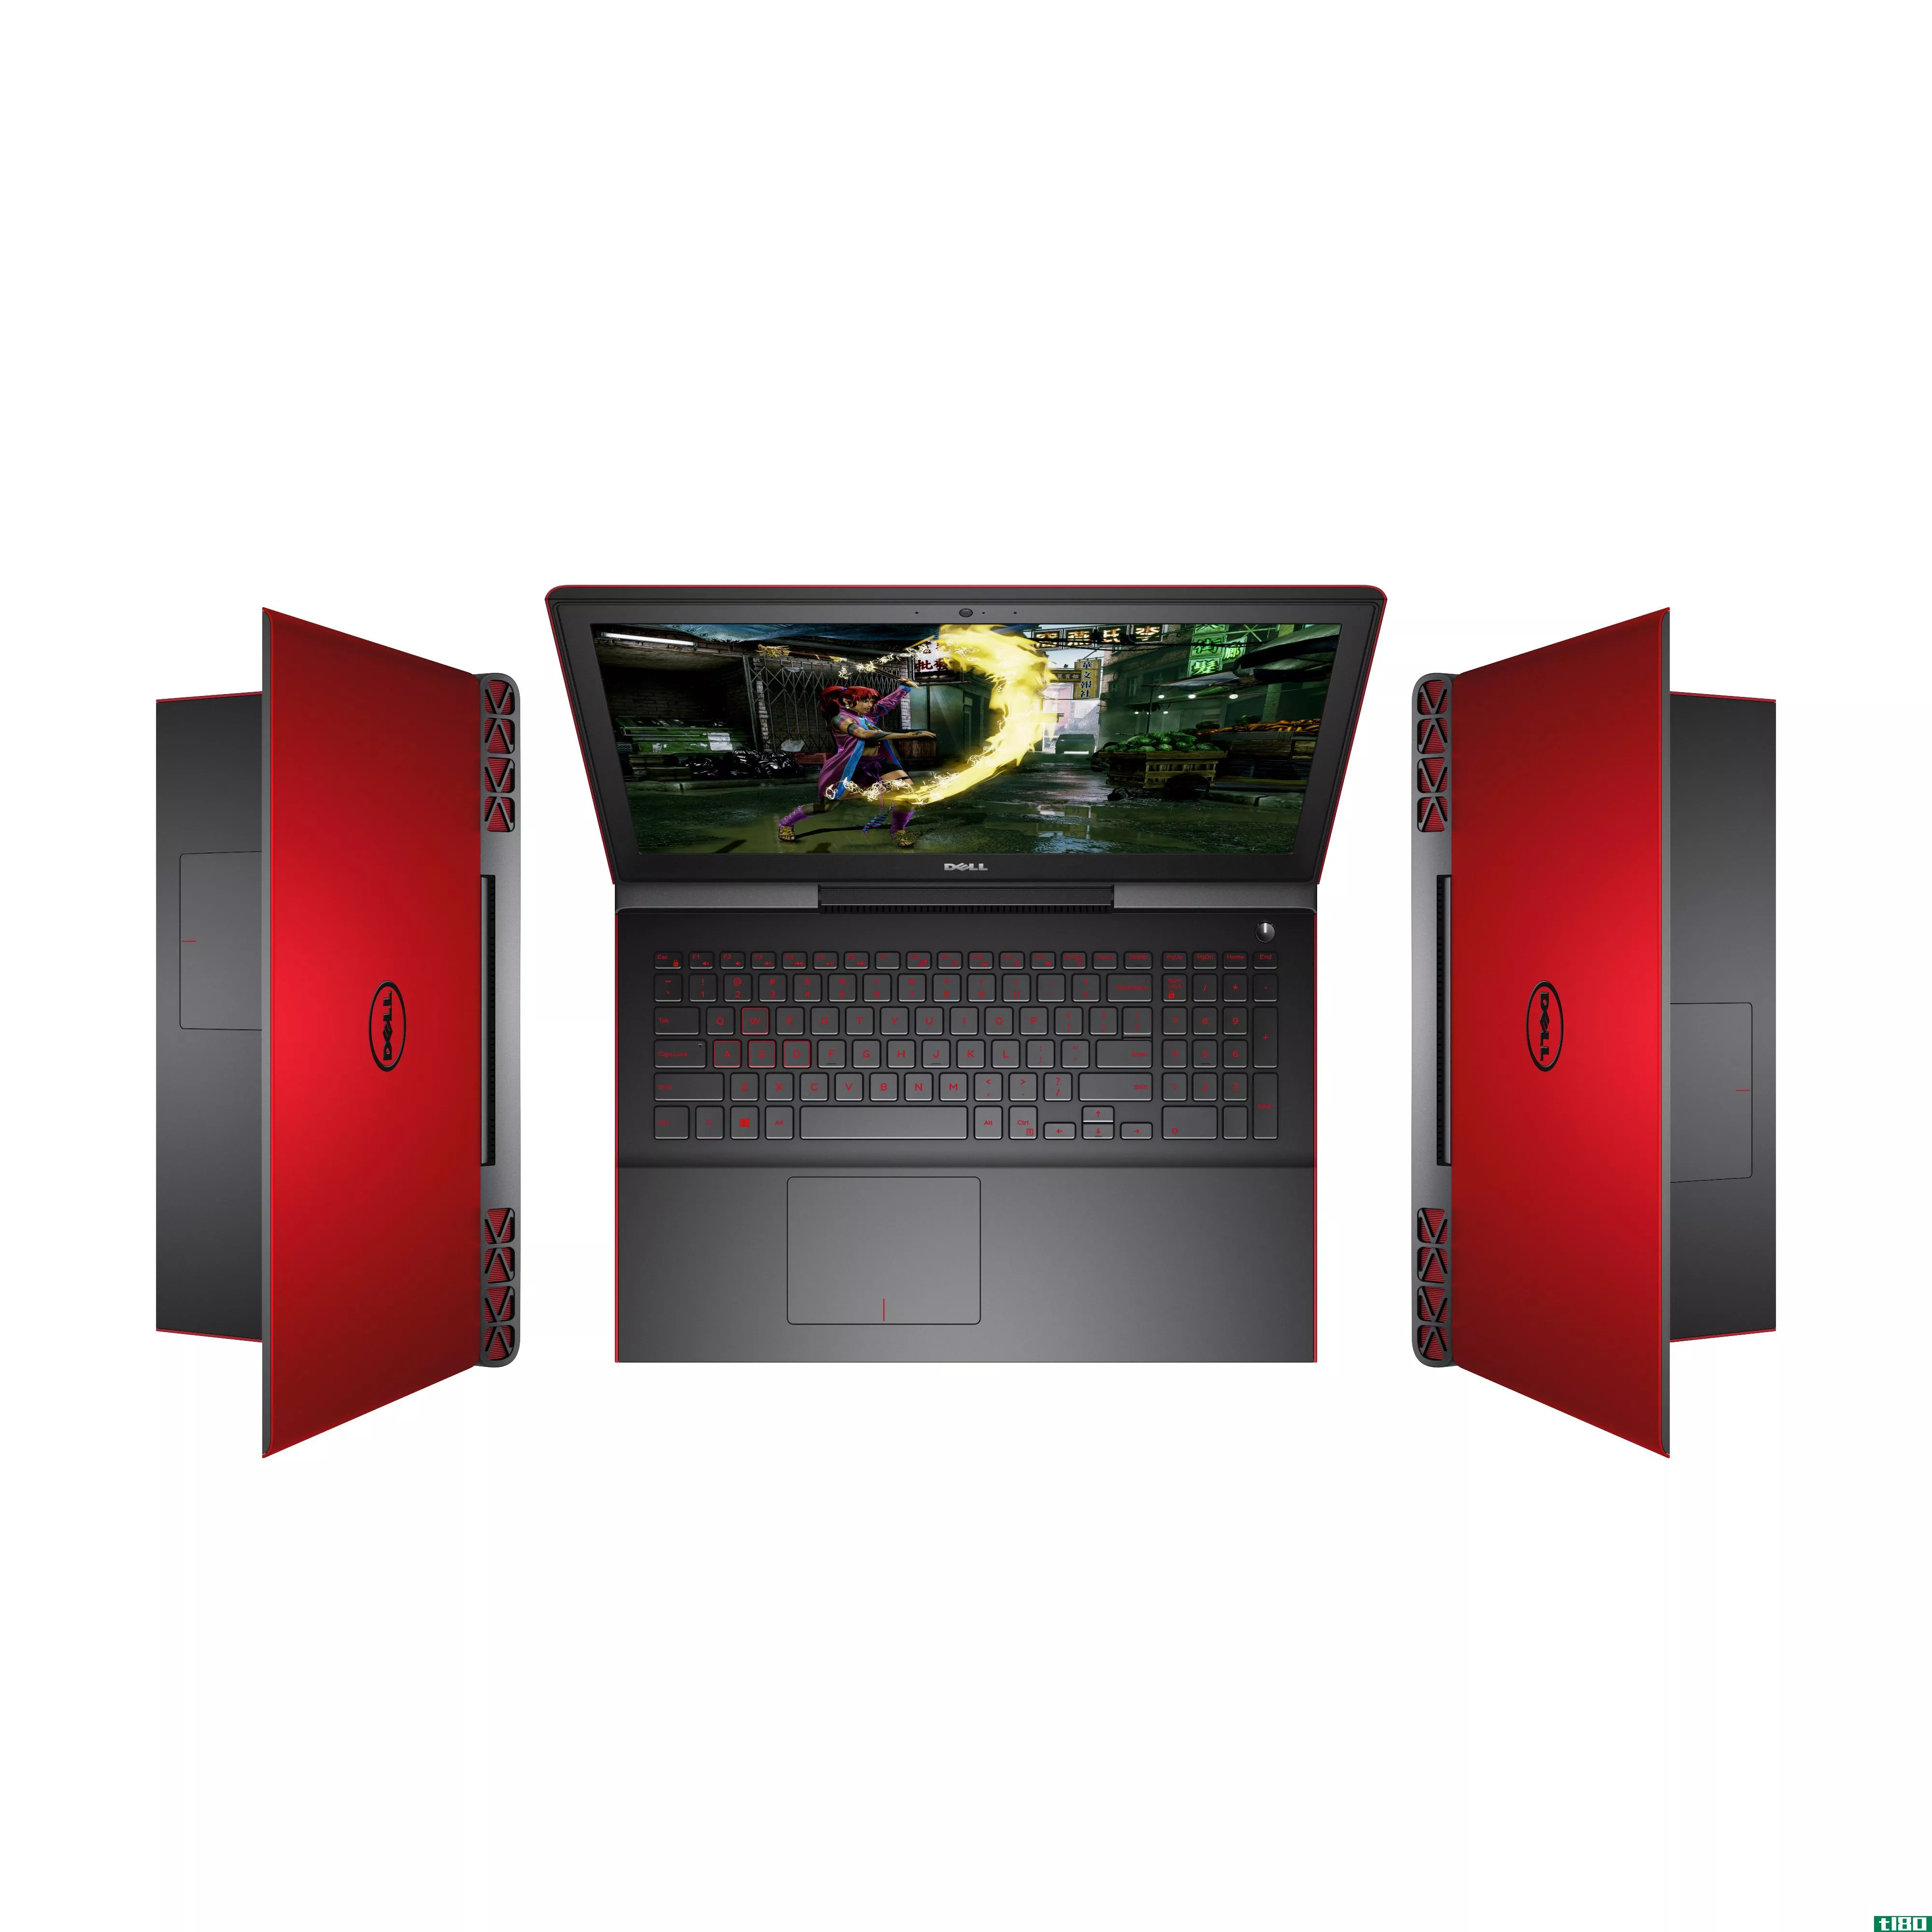 戴尔在一台售价799美元的游戏笔记本电脑中安装了GTX1050GPU